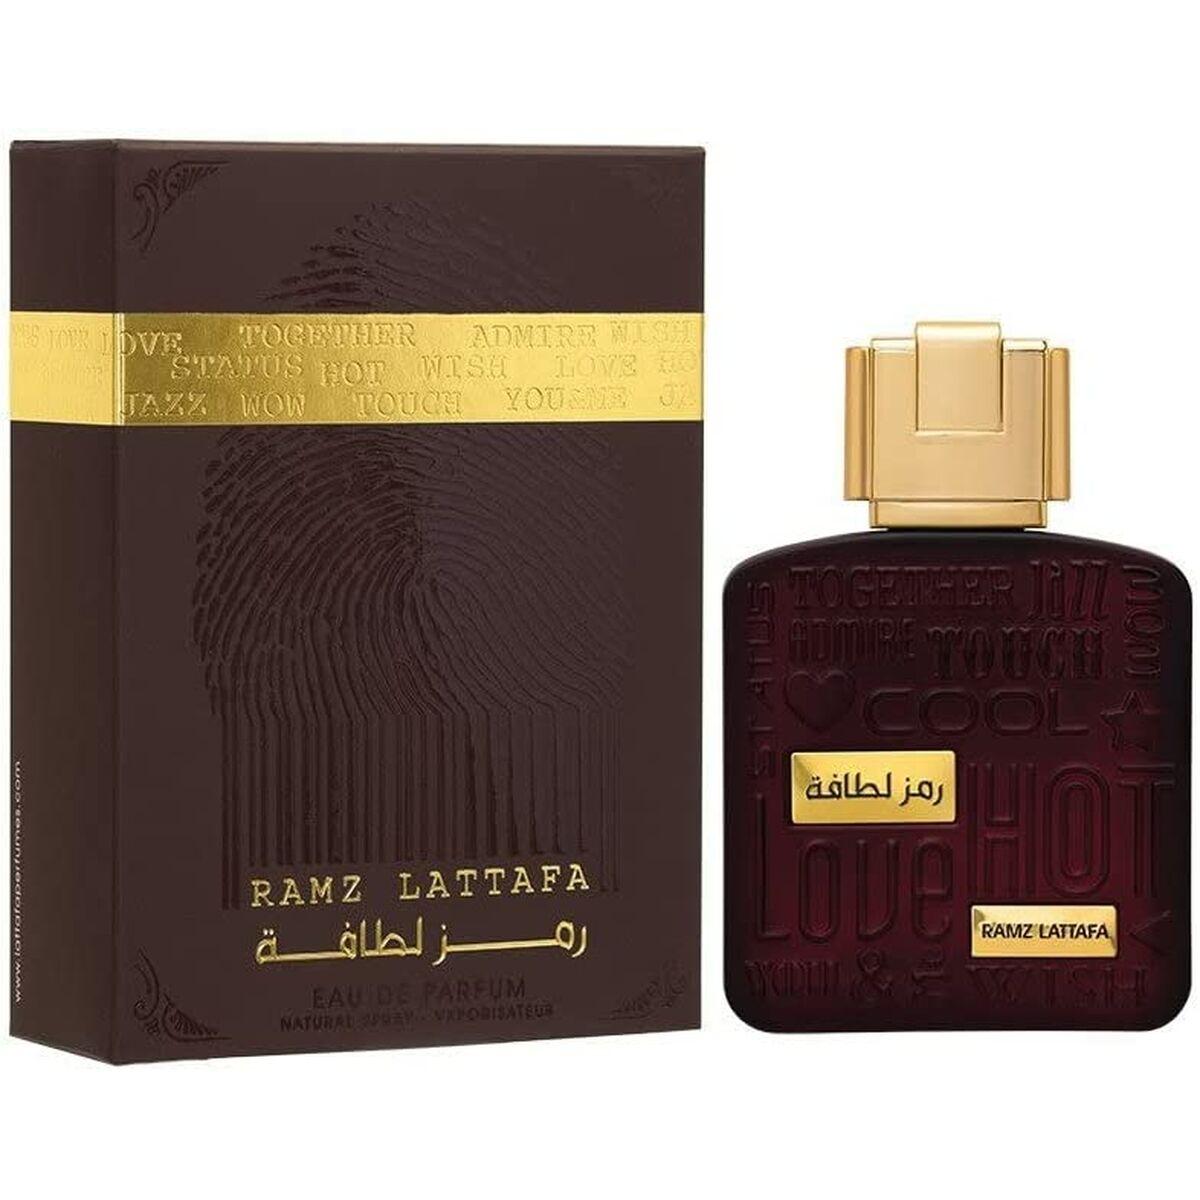 Unisex parfume Lattafa EDP Ramz Lattafa Gold 100 ml